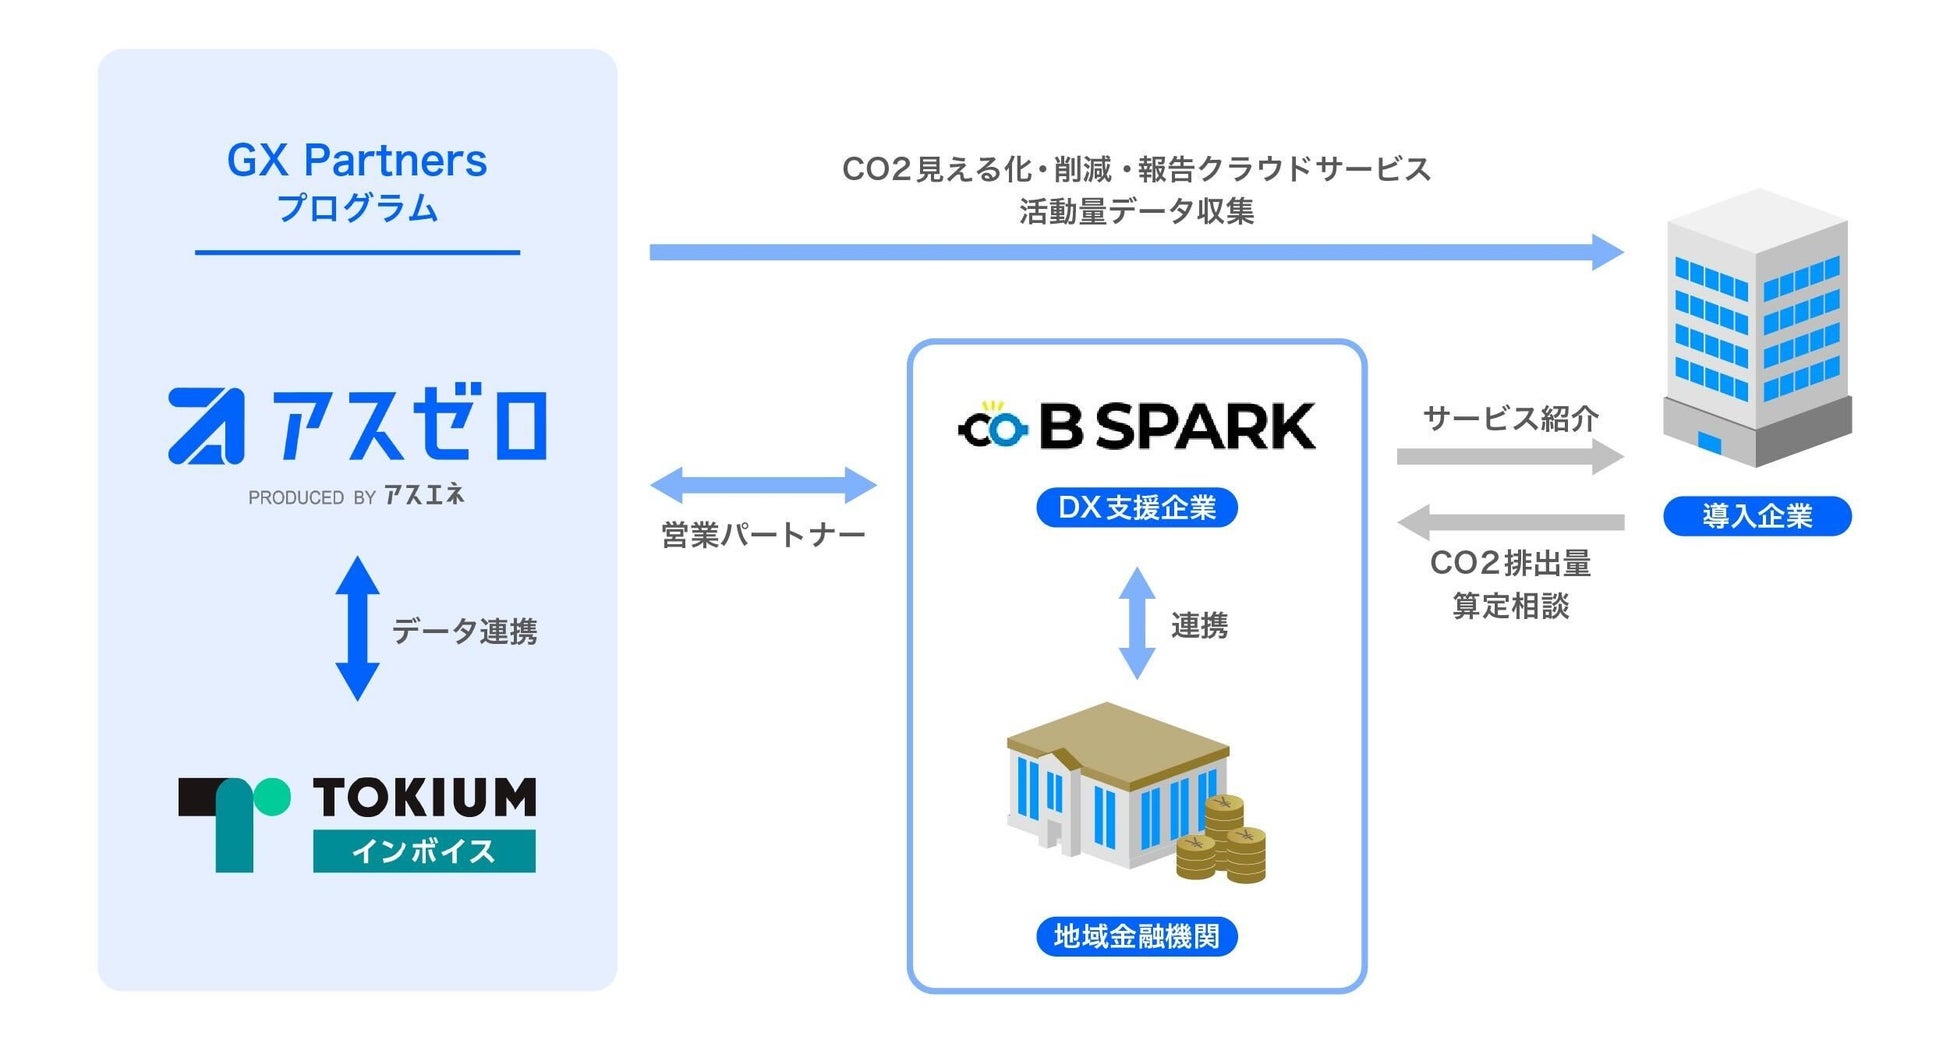 TOKIUM（トキウム）、ワンストップで請求書の受領からCO2排出量算定まで行うプログラム「GX Partners」の初の営業パートナーとしてB Sparkと提携開始のサブ画像2